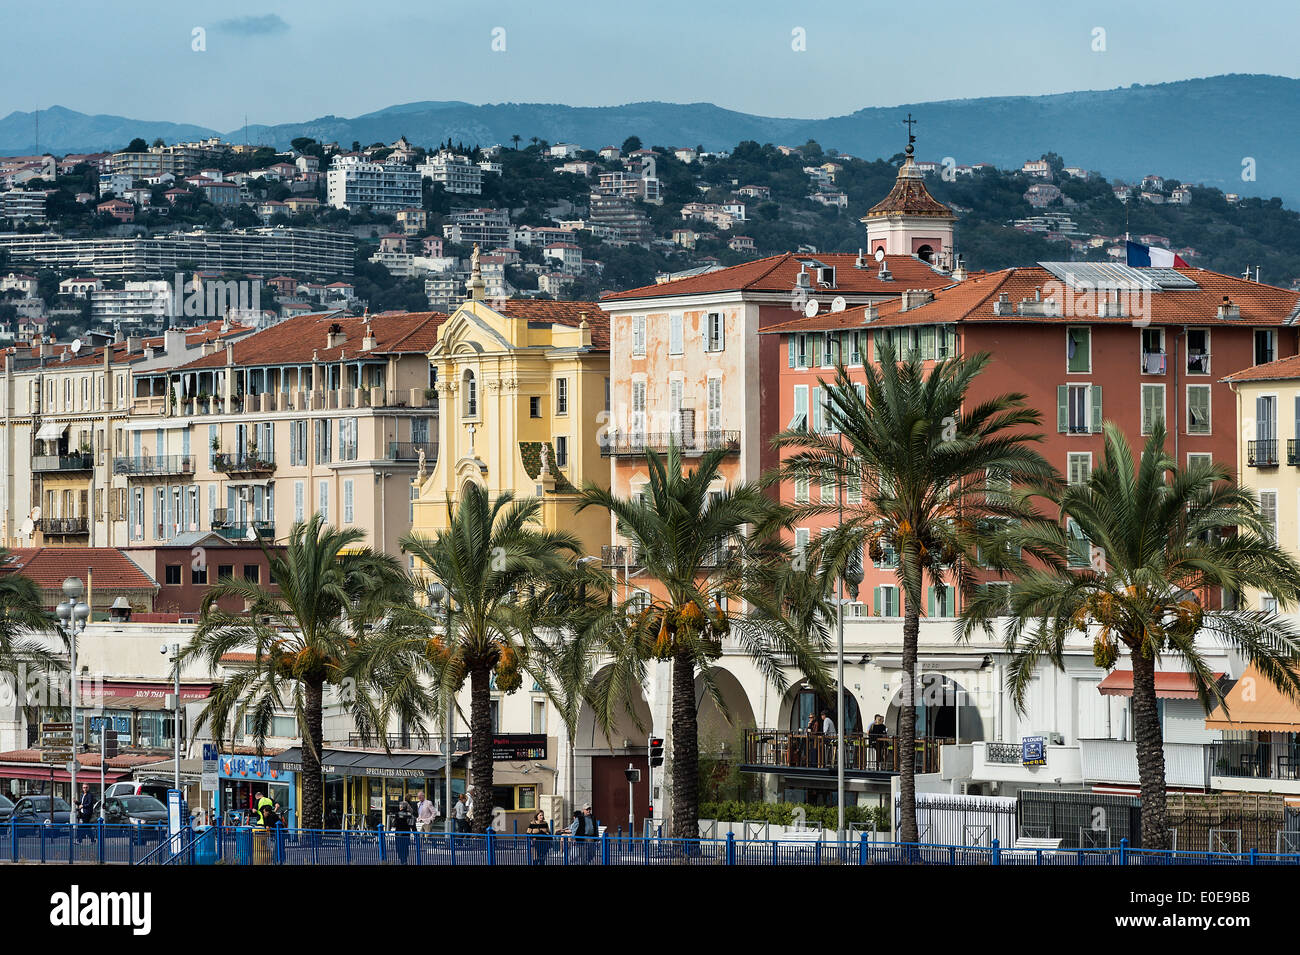 Quai de Etats-Unis, Nizza, Côte d ' Azur, Côte d ' Azur, Frankreich, Europa Stockfoto